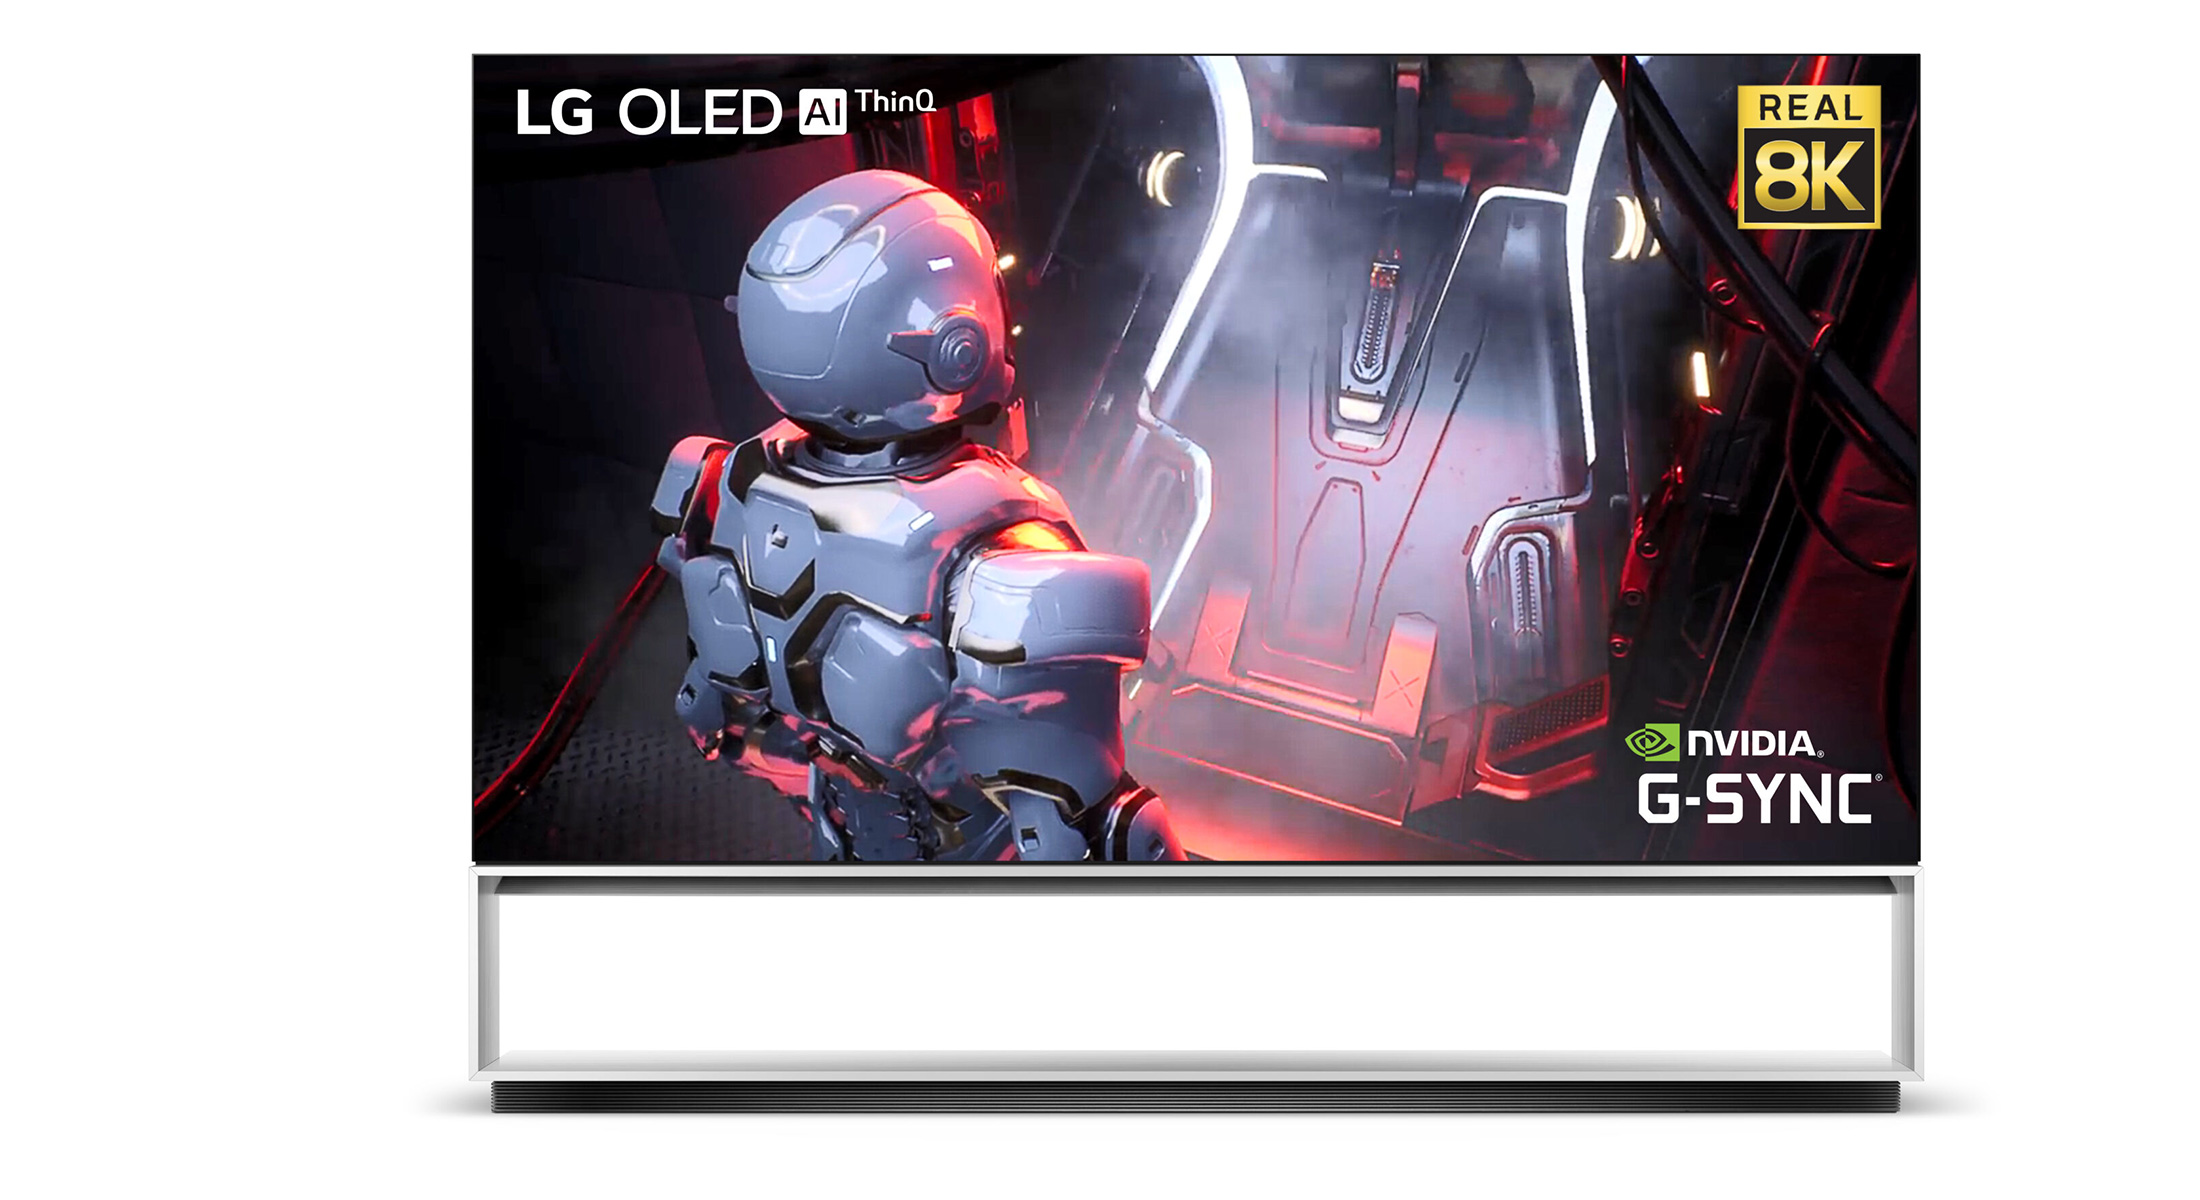 LG dévoile sa télé OLED 8K gaming avec compatibilité Nvidia G-SYNC